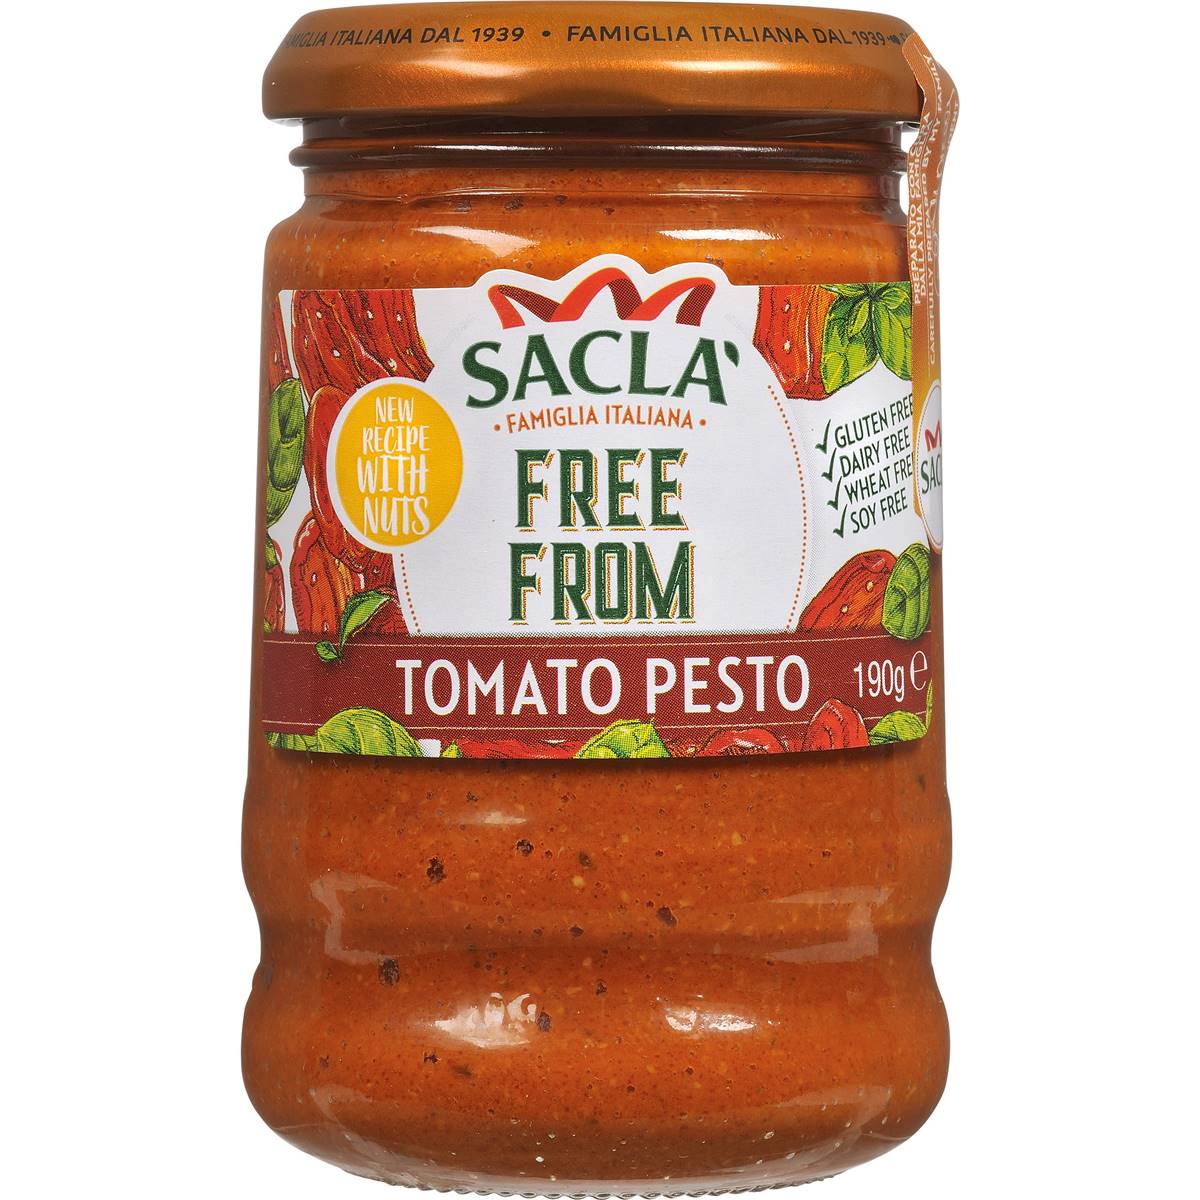 Calories in Sacla Tomato Pesto Free From